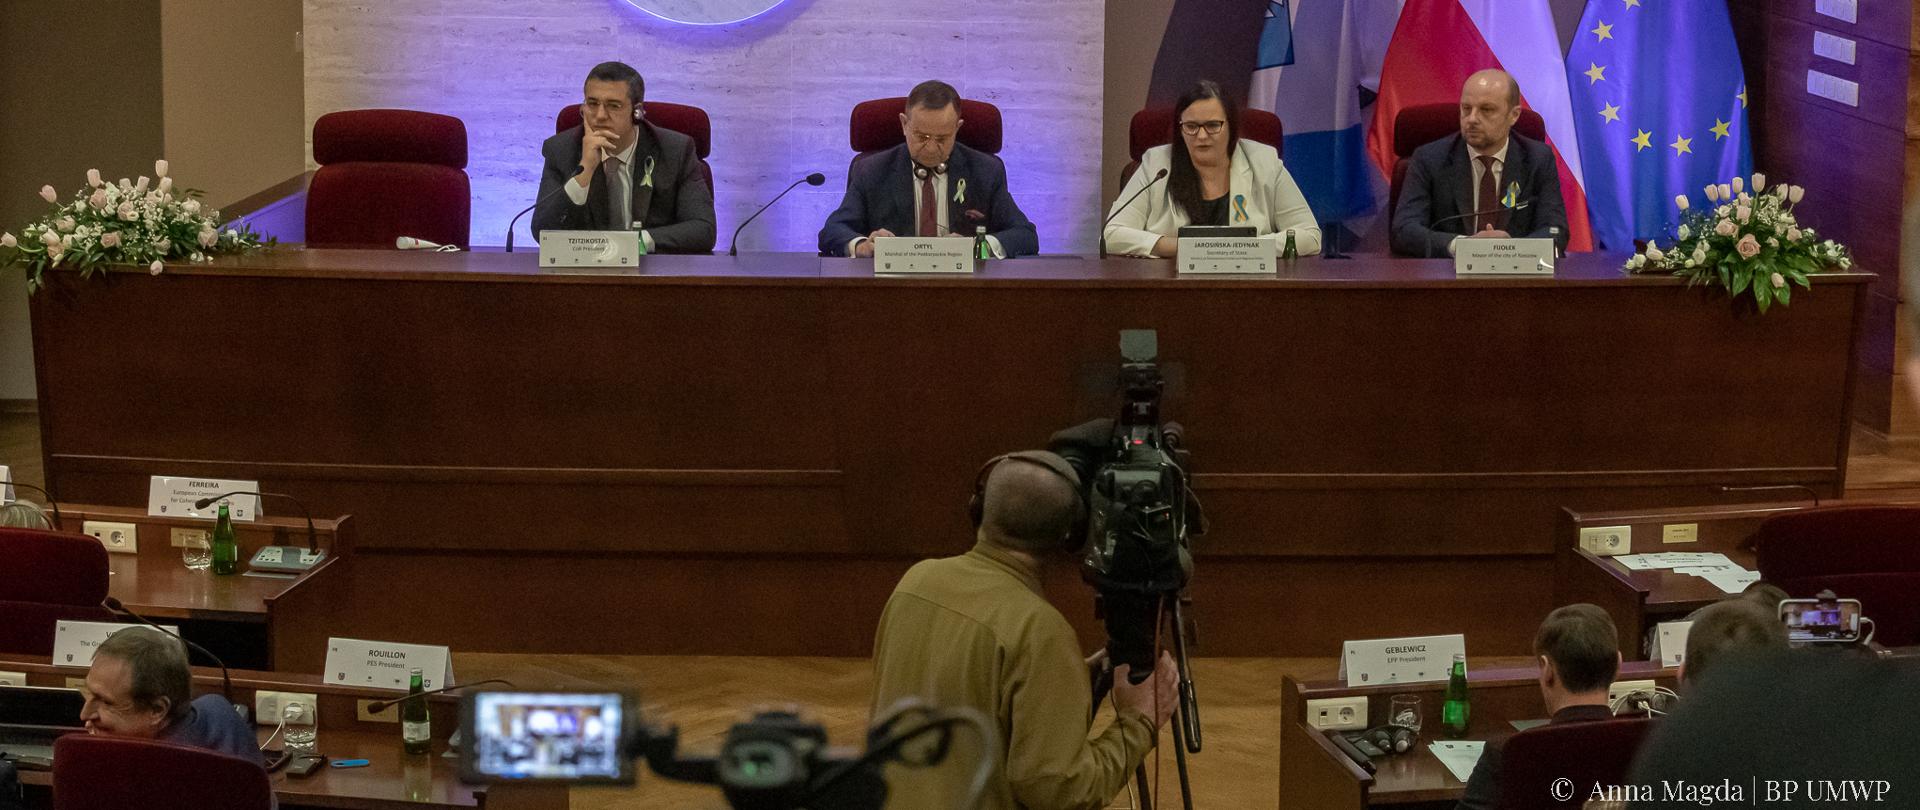 Przy długim stole siedzą cztery osoby. Druga od prawej wiceminister Małgorzata Jarosińska-Jedynak. Za nimi flagi PL, UE i UA. Na ścianie godło Rzeszowa. Przed nimi kamerzysta i słuchacze.